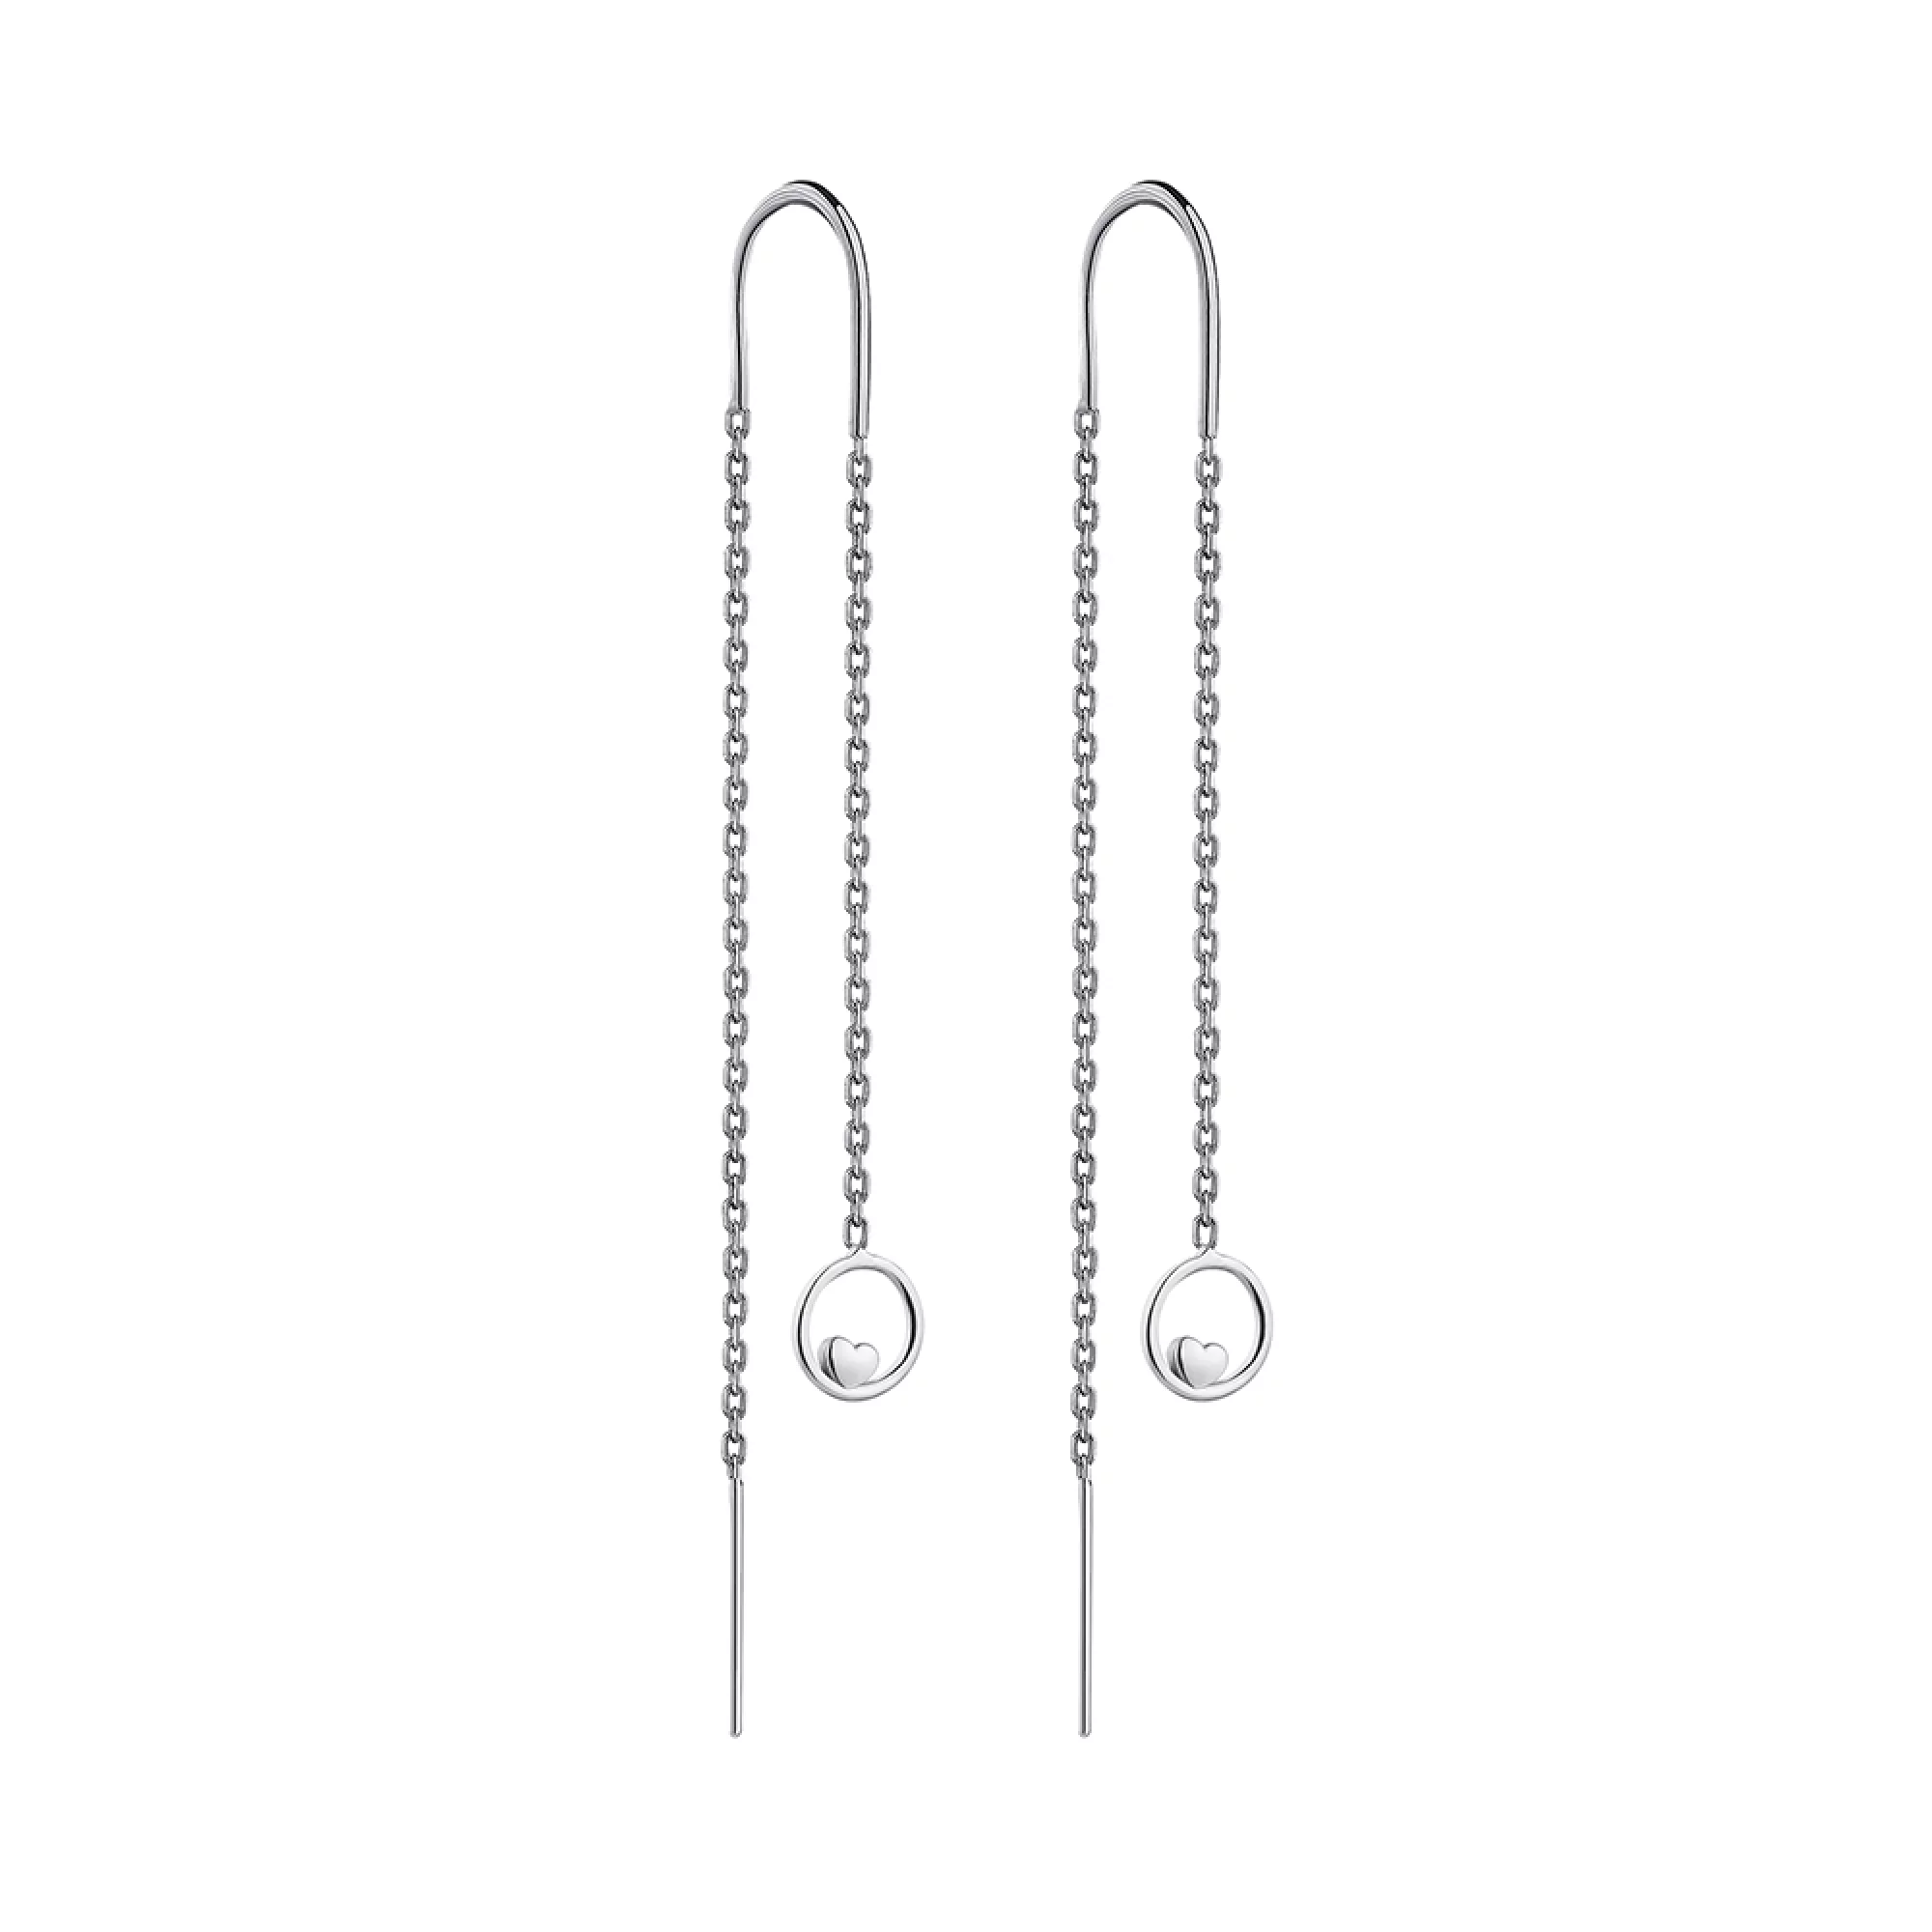 Сережки-протяжки зі срібла Кільця та Сердечка - 1306319 – зображення 1